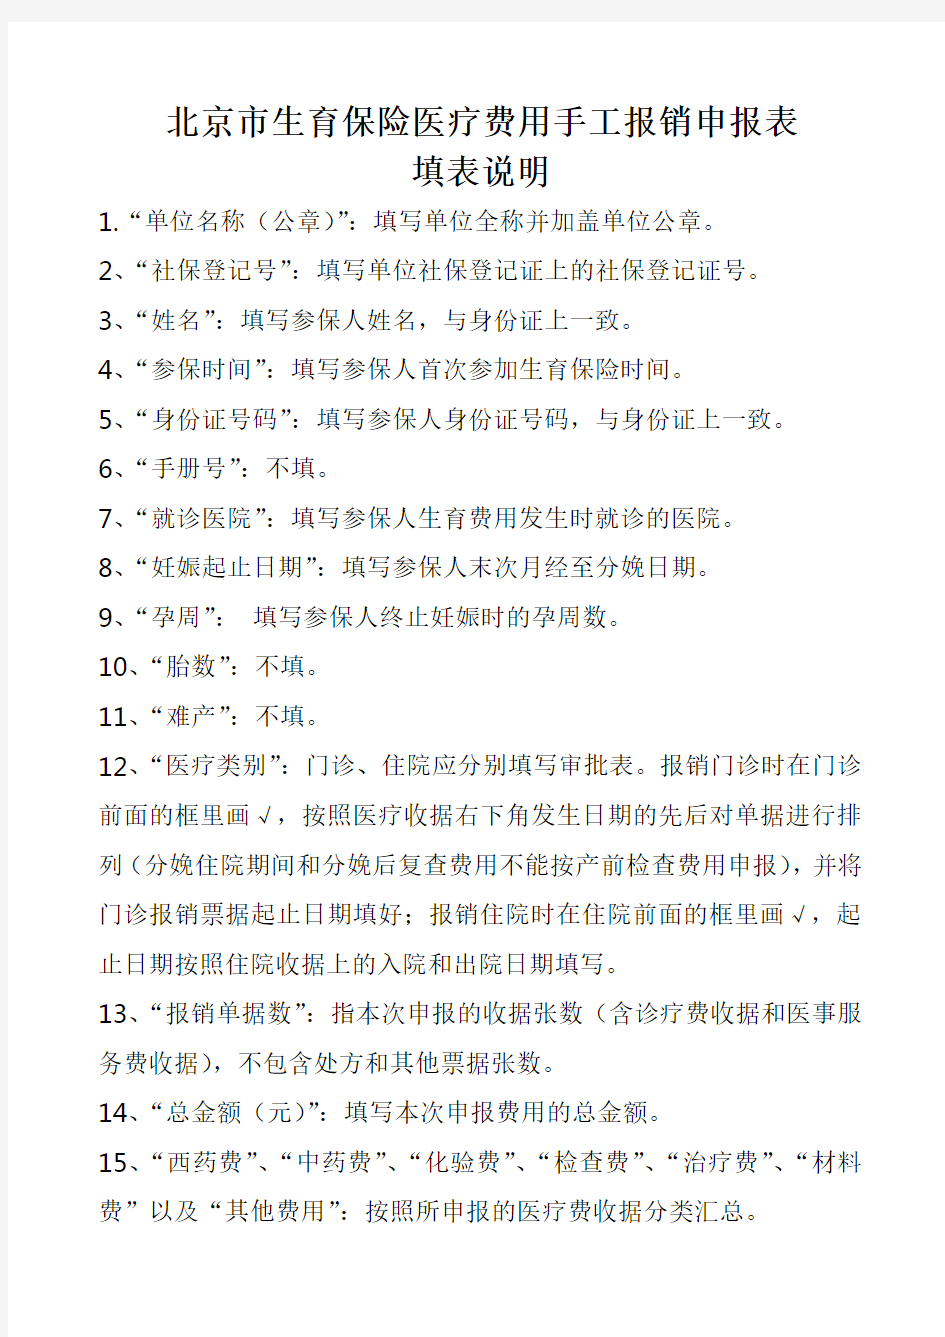 北京市生育保险医疗费用手工报销申报表填表说明